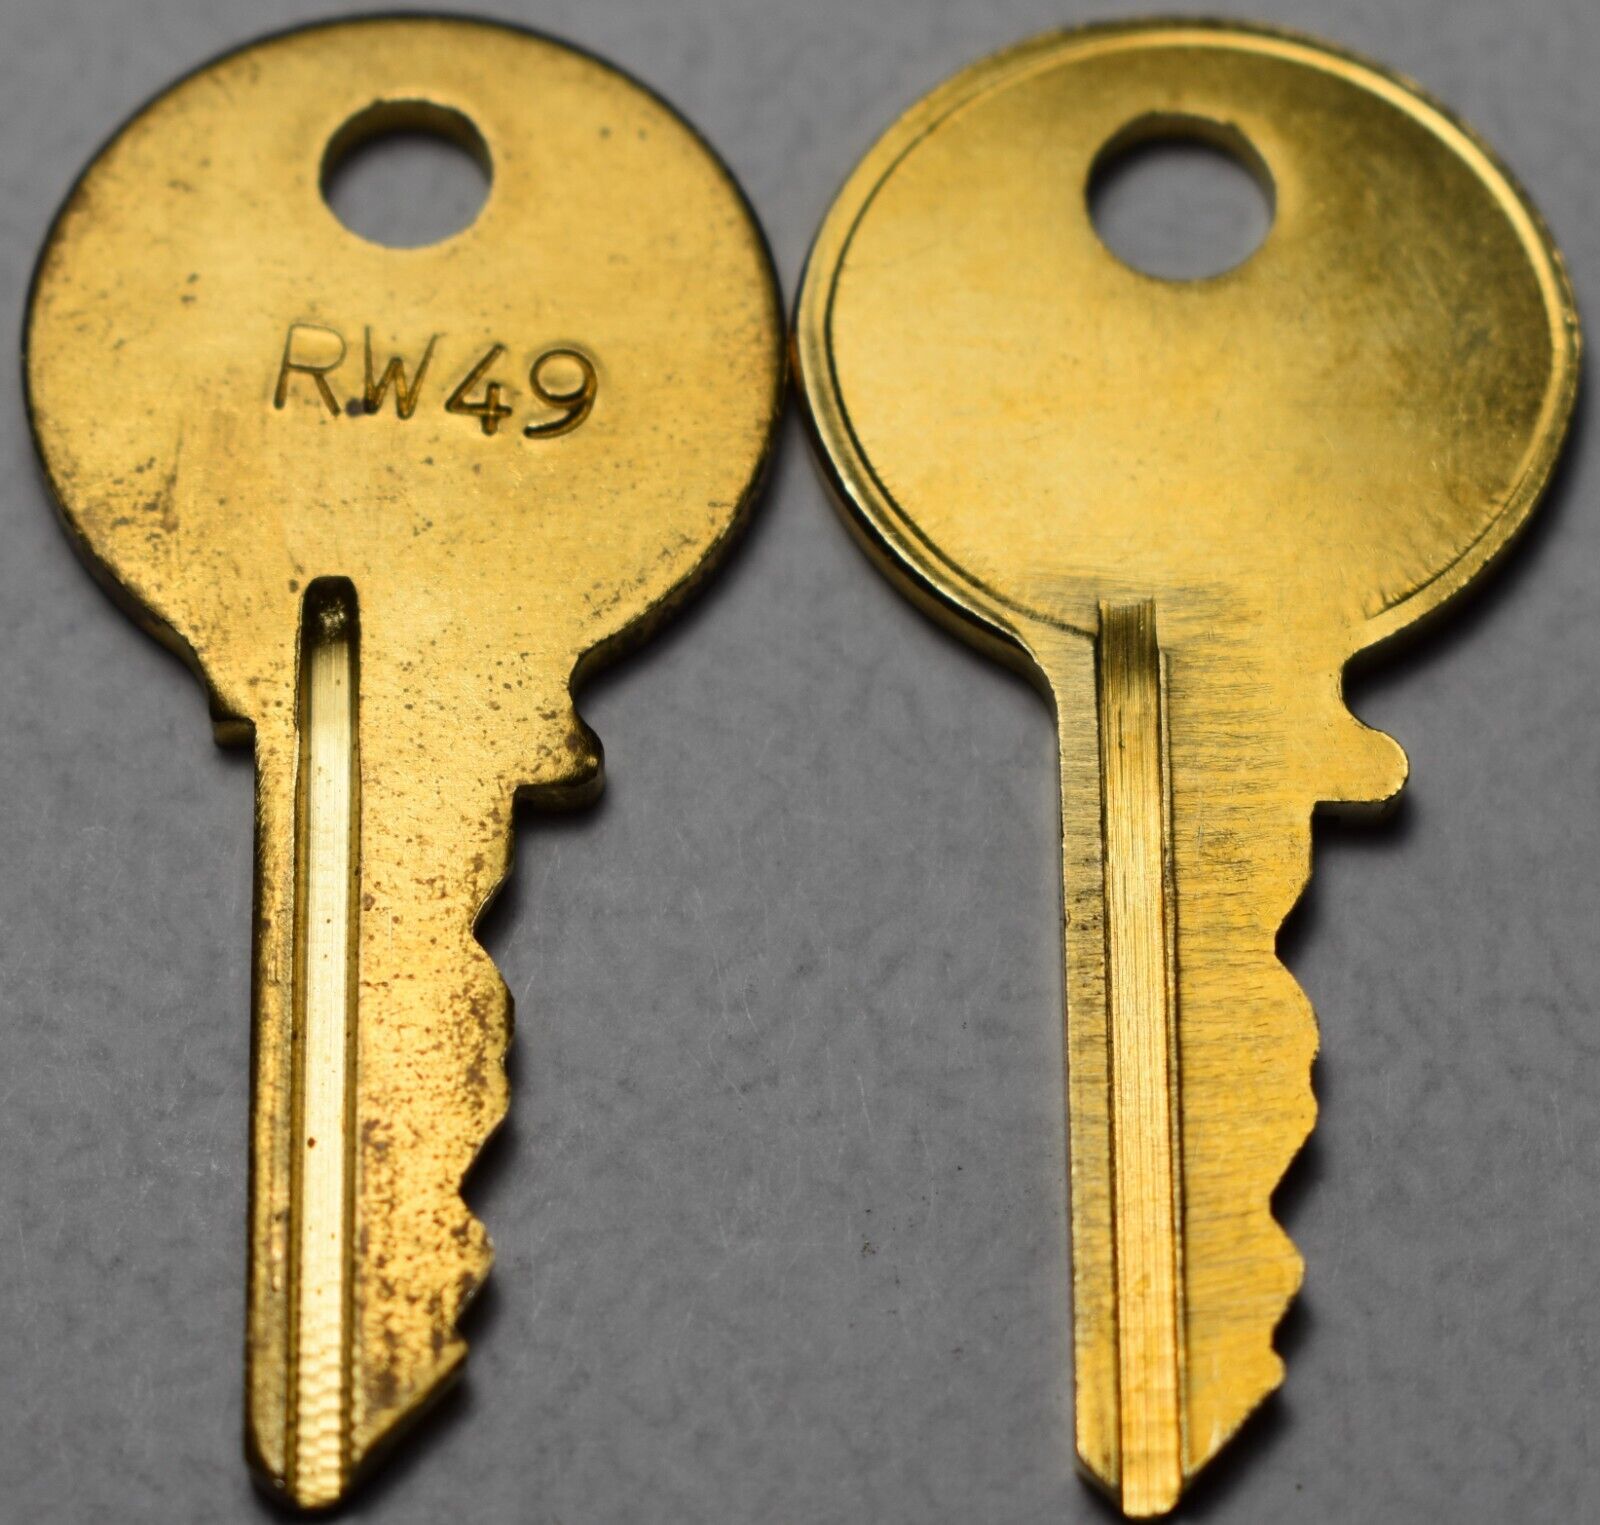 *NEW* Wurlitzer RW49 Jukebox Key ~ Fits Models 1500A 1550A 1600 1650